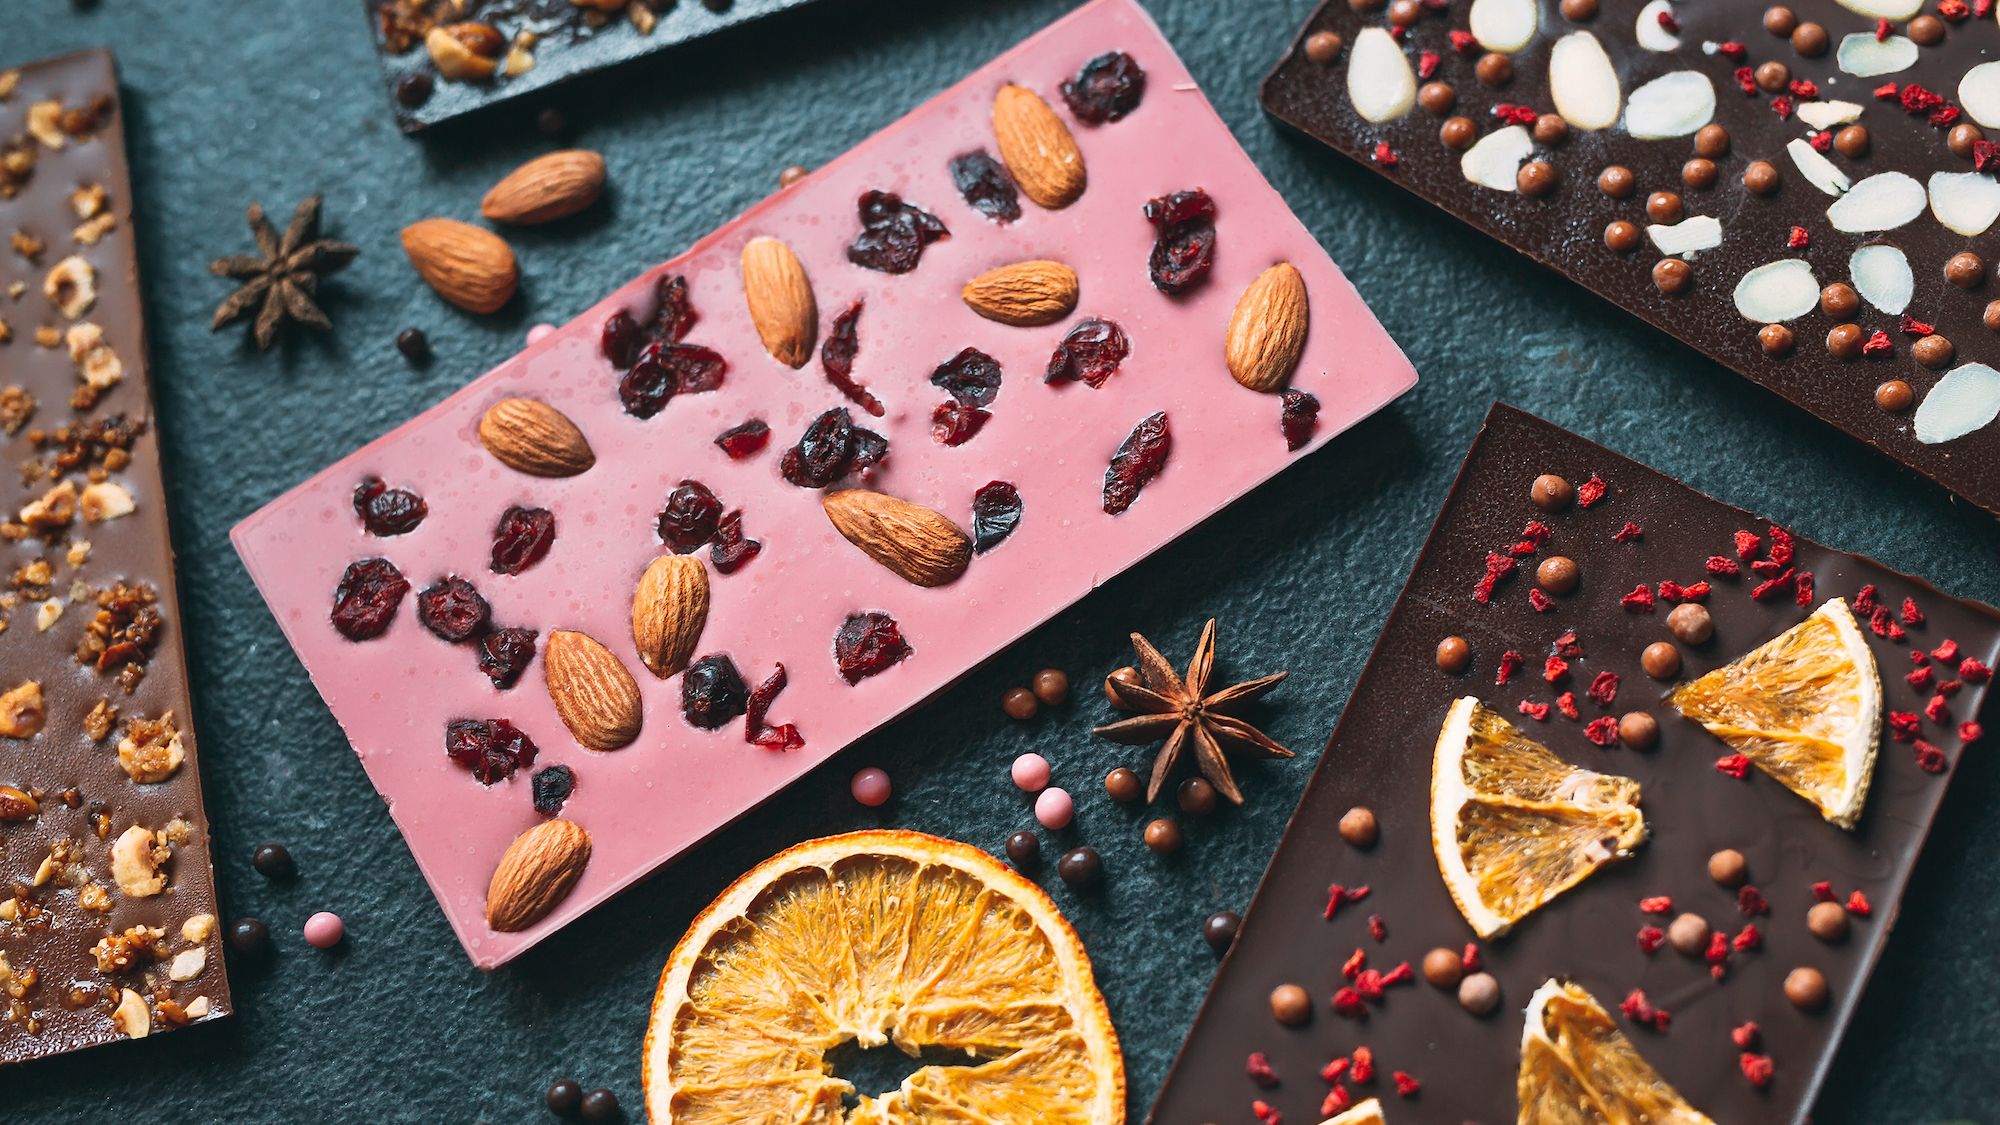 2 nouvelles recettes créatives pour les tablettes de chocolat